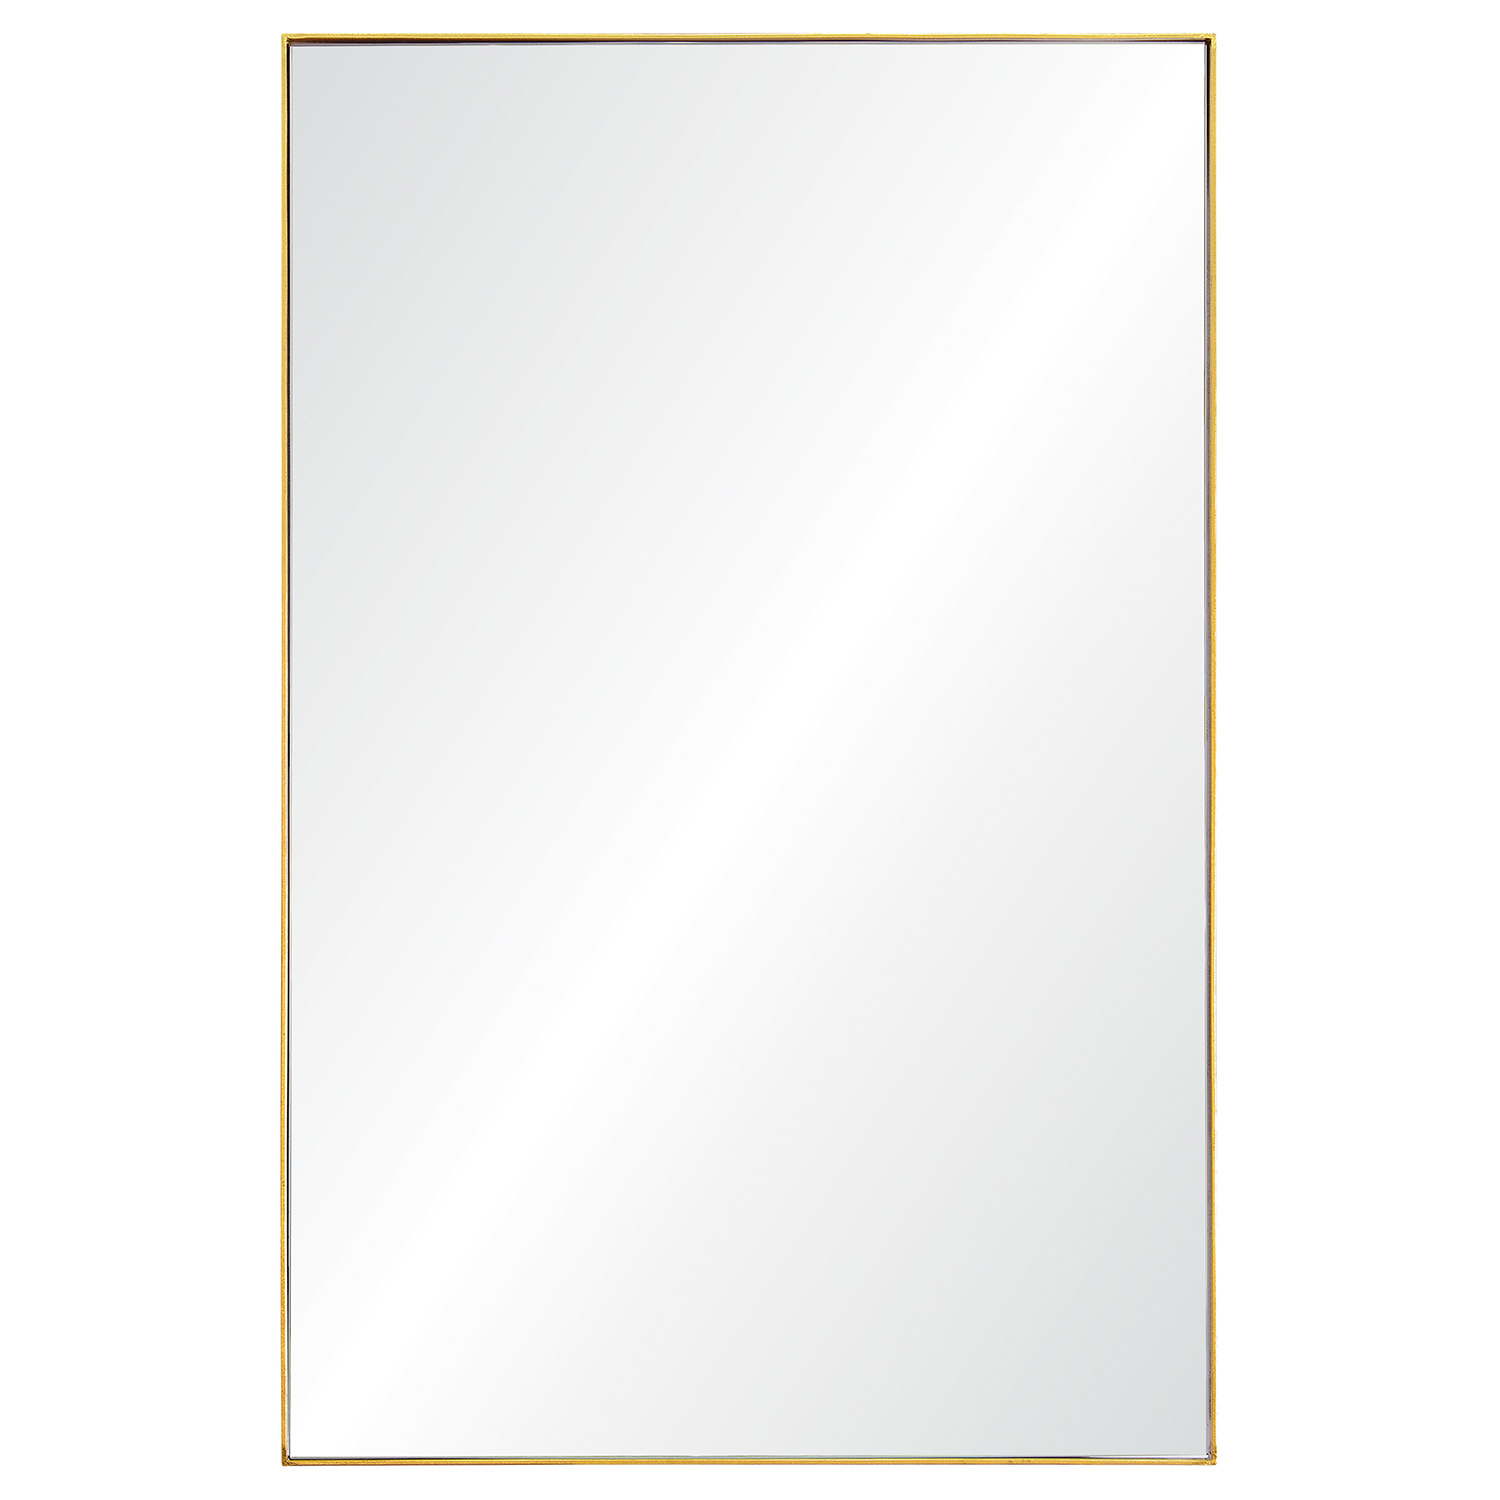 Ren-Wil Florence Rectangular Mirror - Gold Leaf